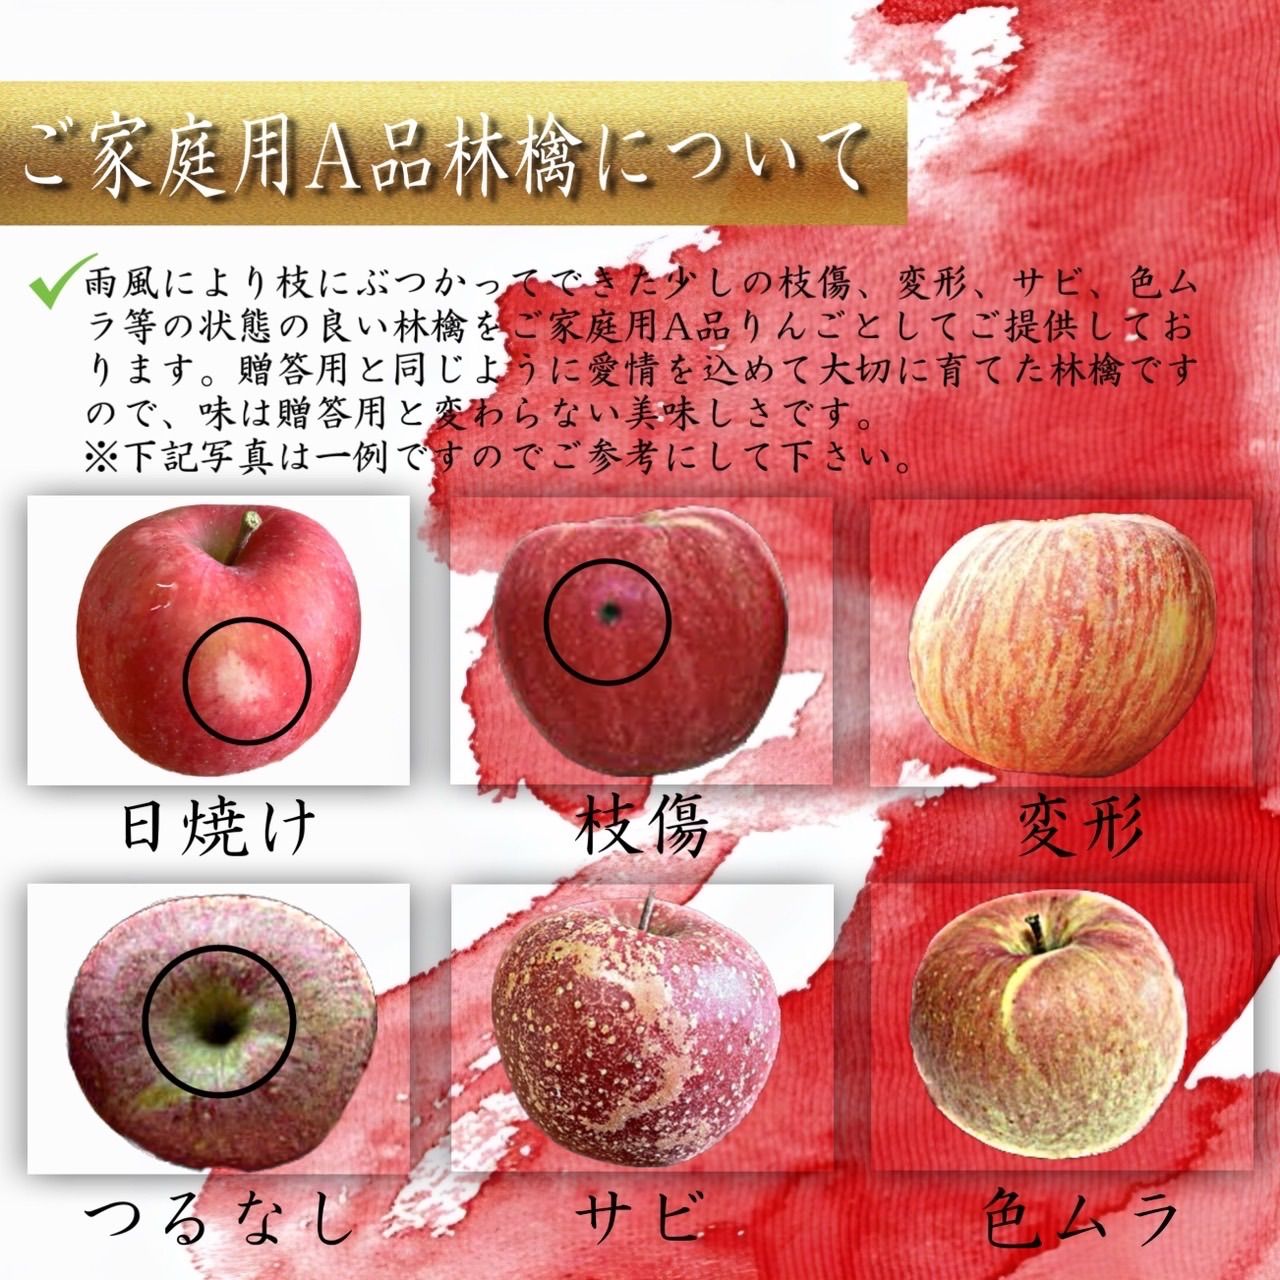 青森県産 最大5種ミックス りんご 家庭用 10kg 農家直送 リンゴ ふじ